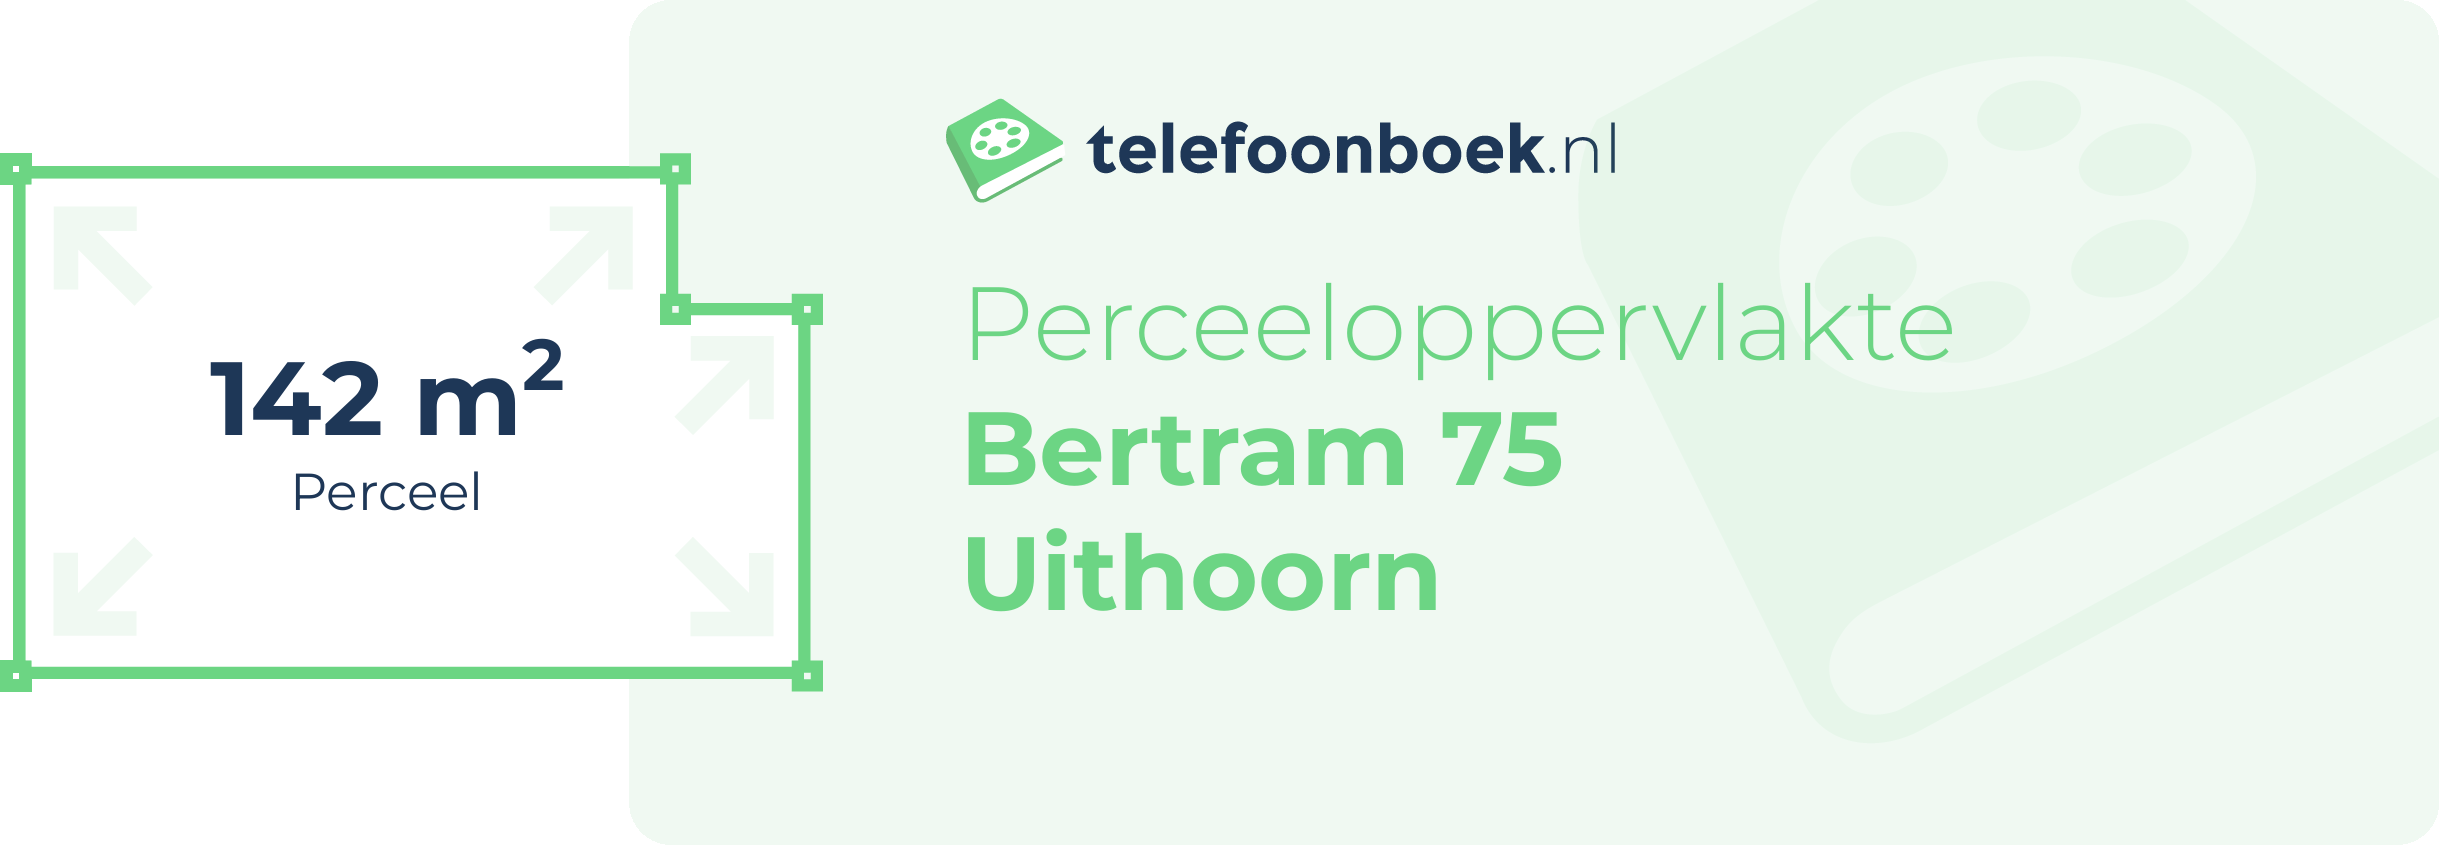 Perceeloppervlakte Bertram 75 Uithoorn